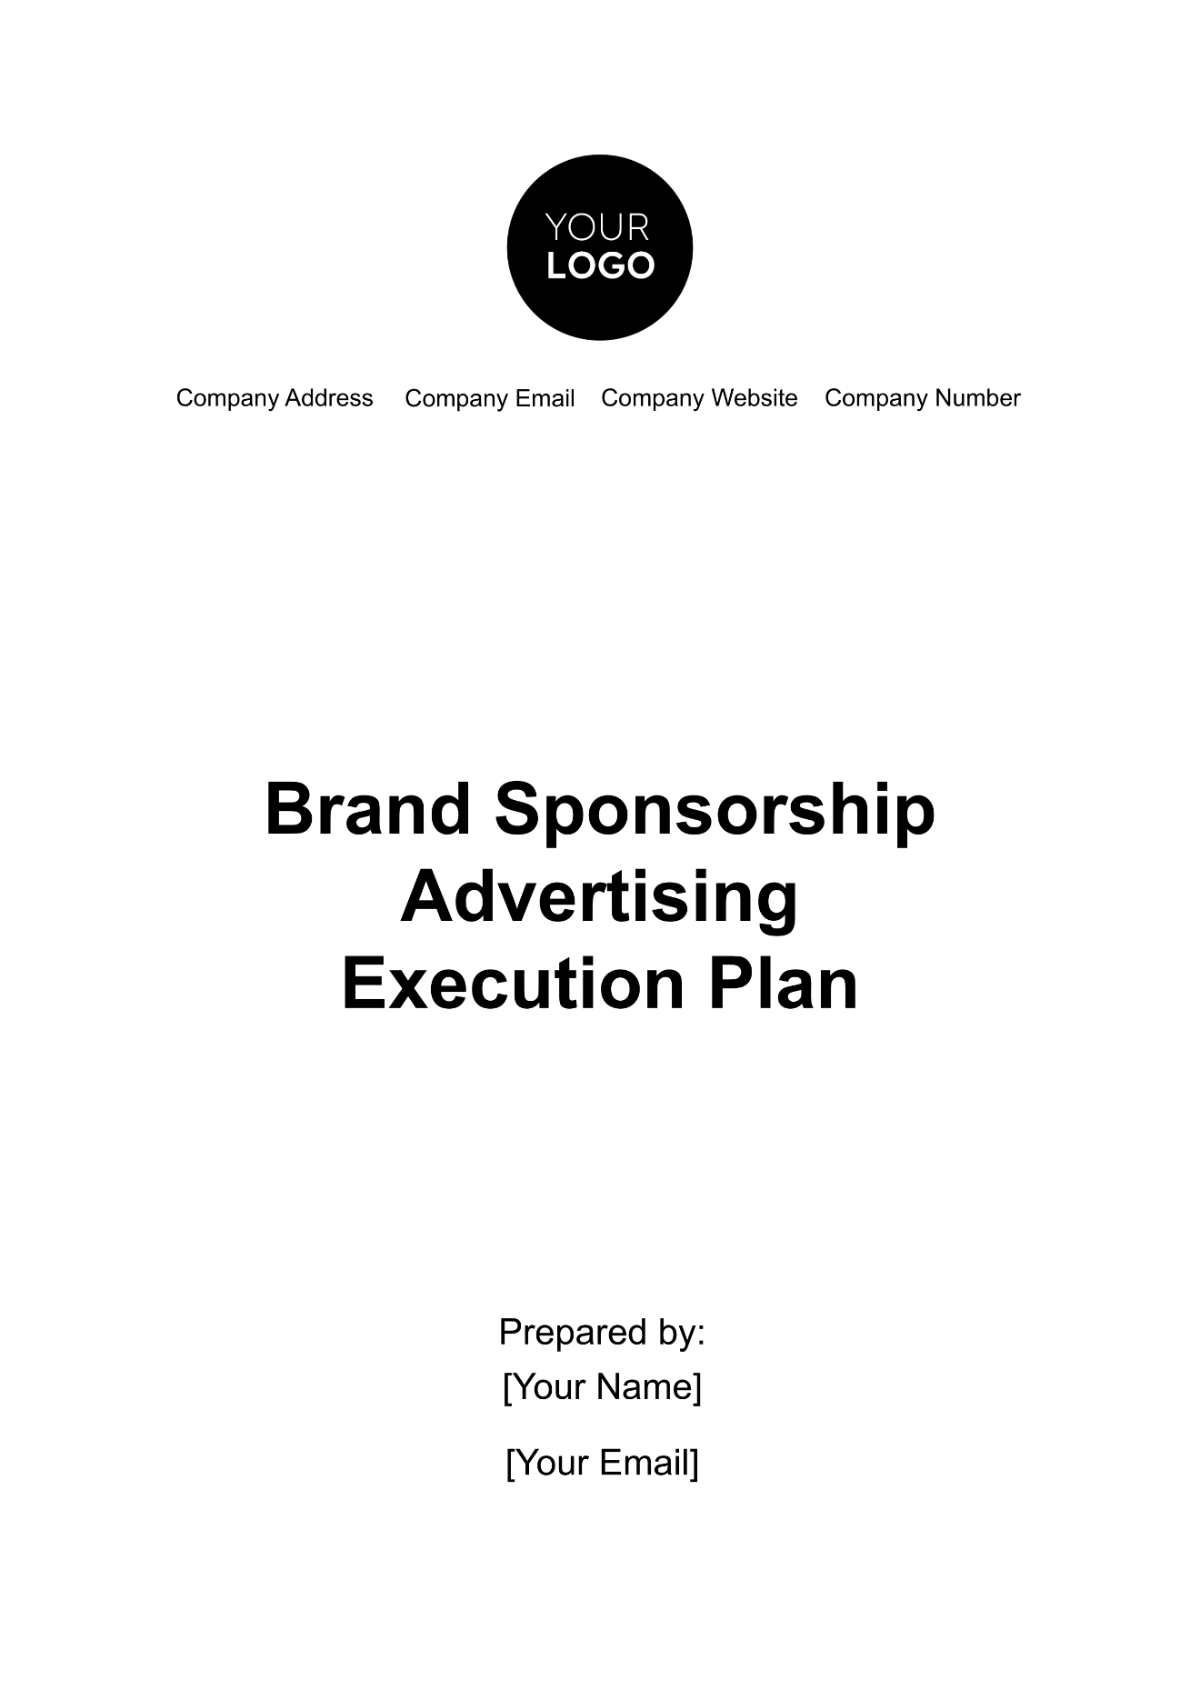 Free Brand Sponsorship Advertising Execution Plan Template